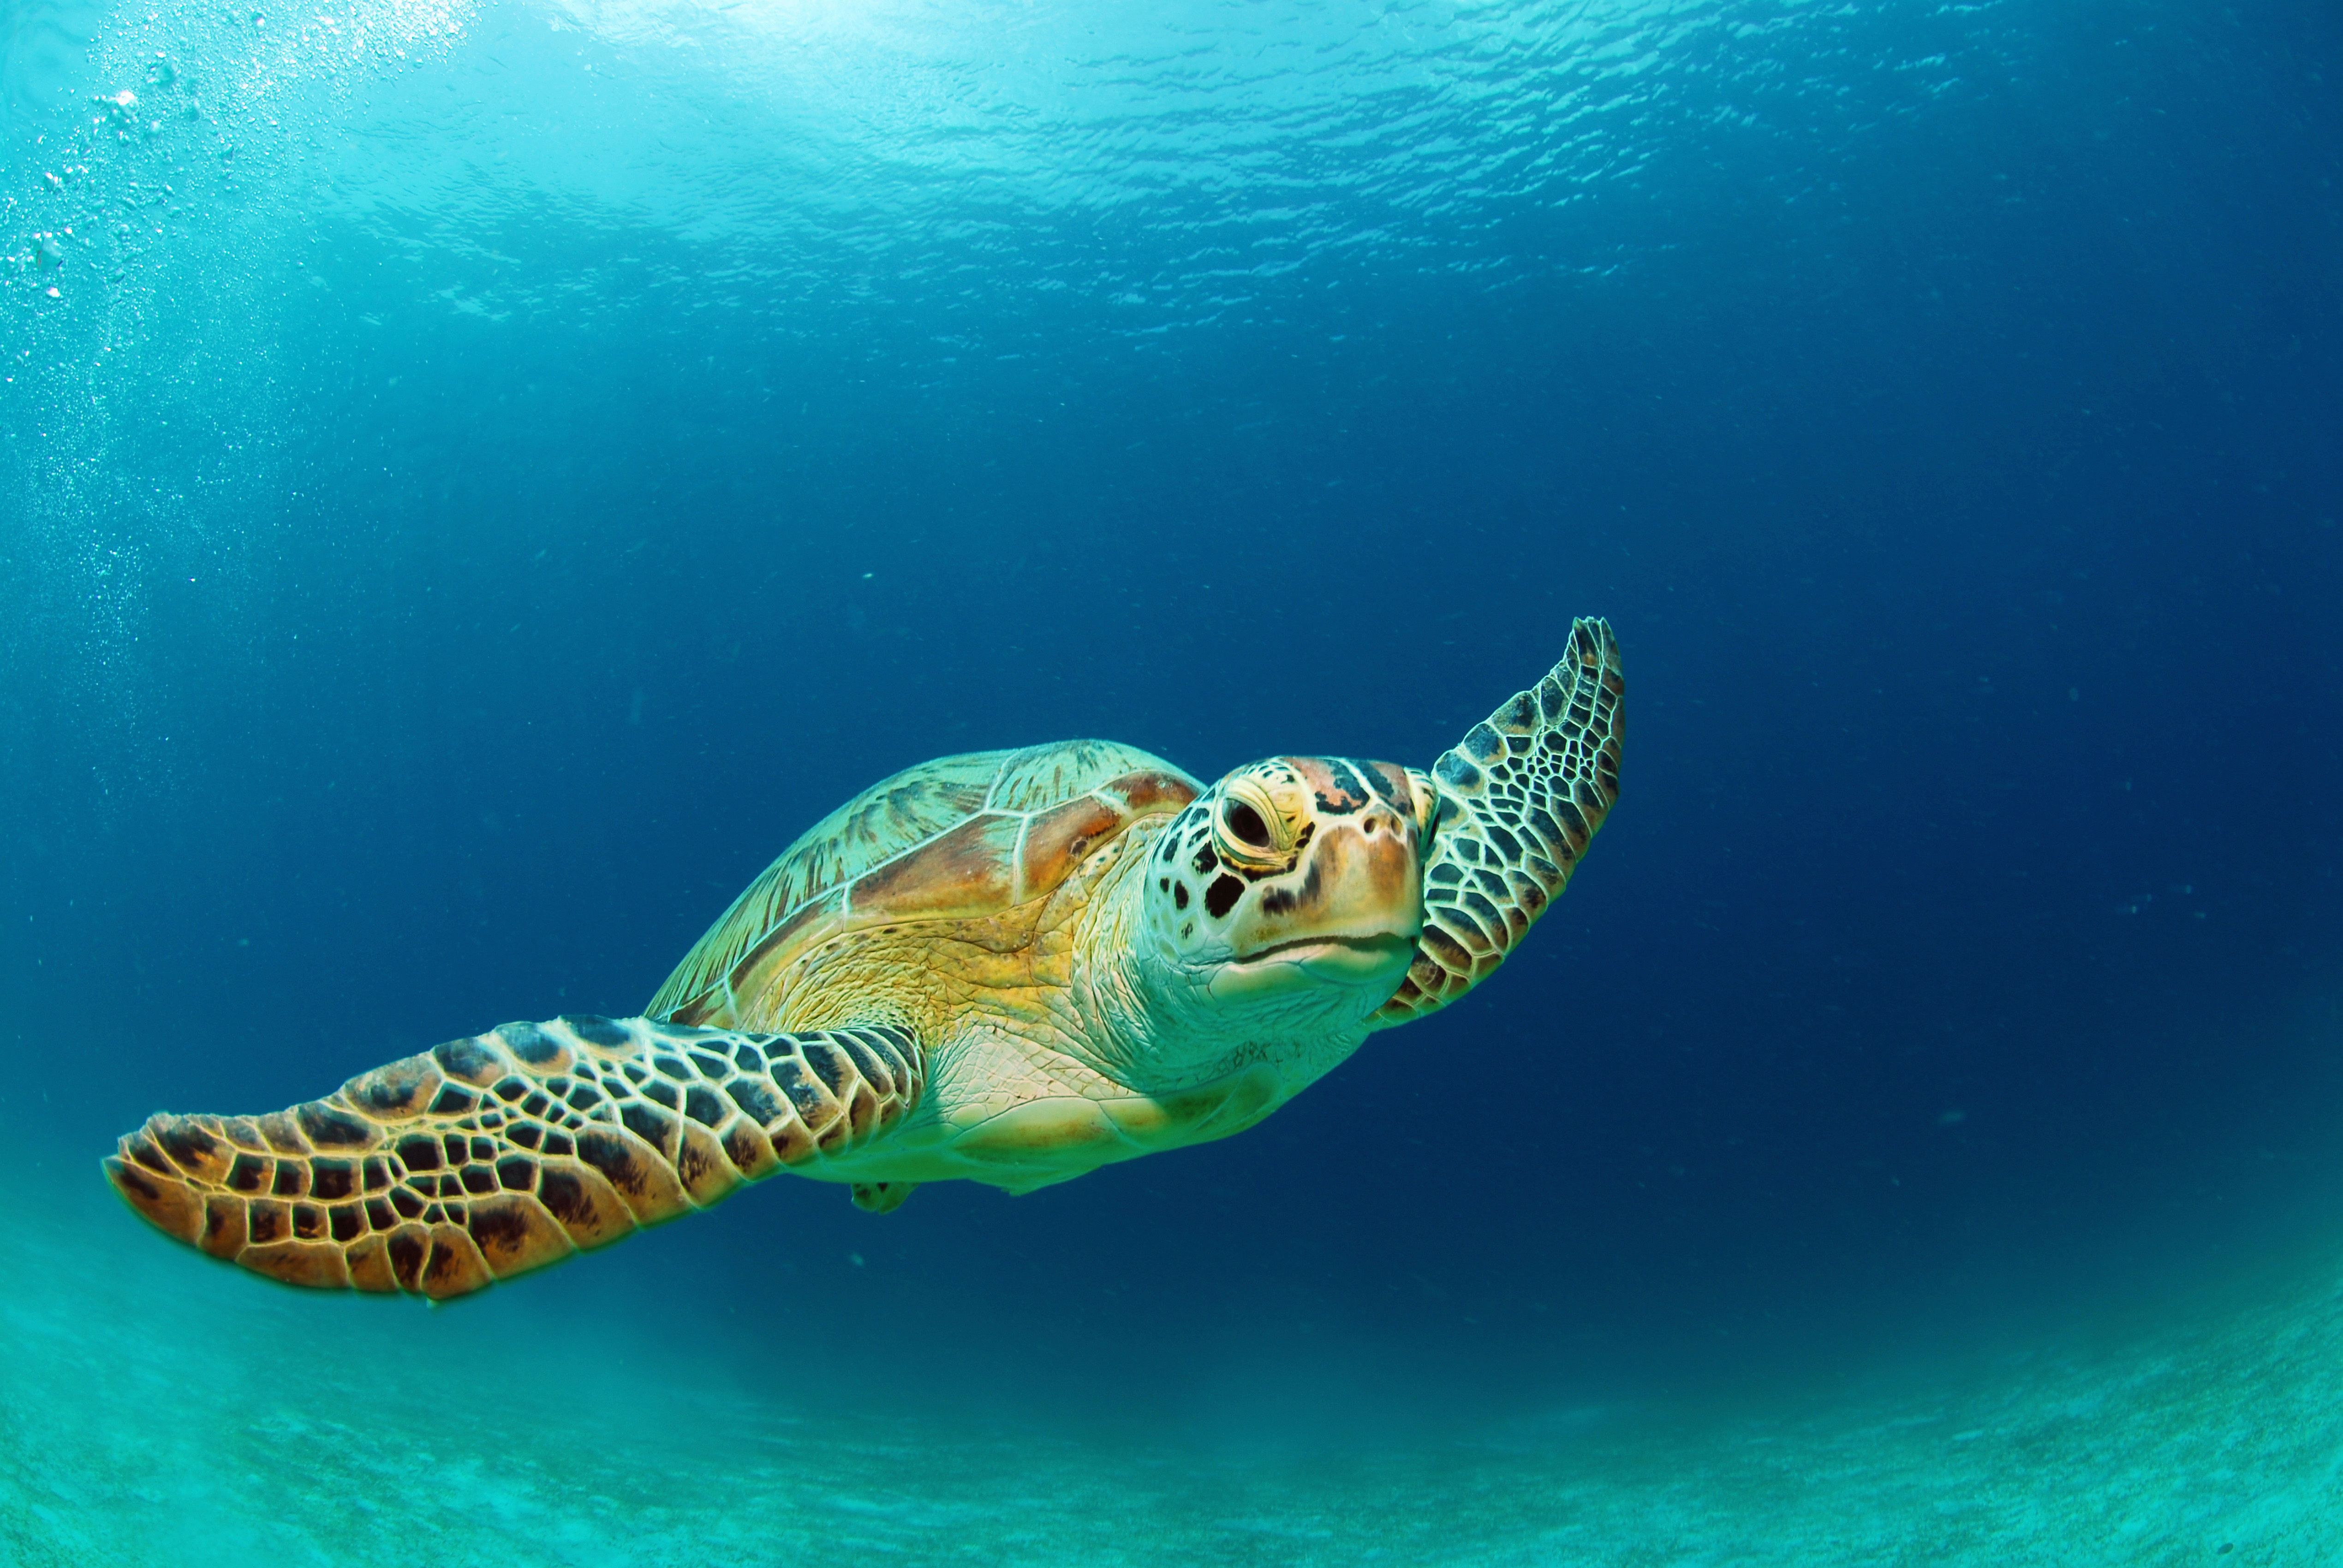 Panama da deniz kaplumbağalarına yasal hakları teslim edildi